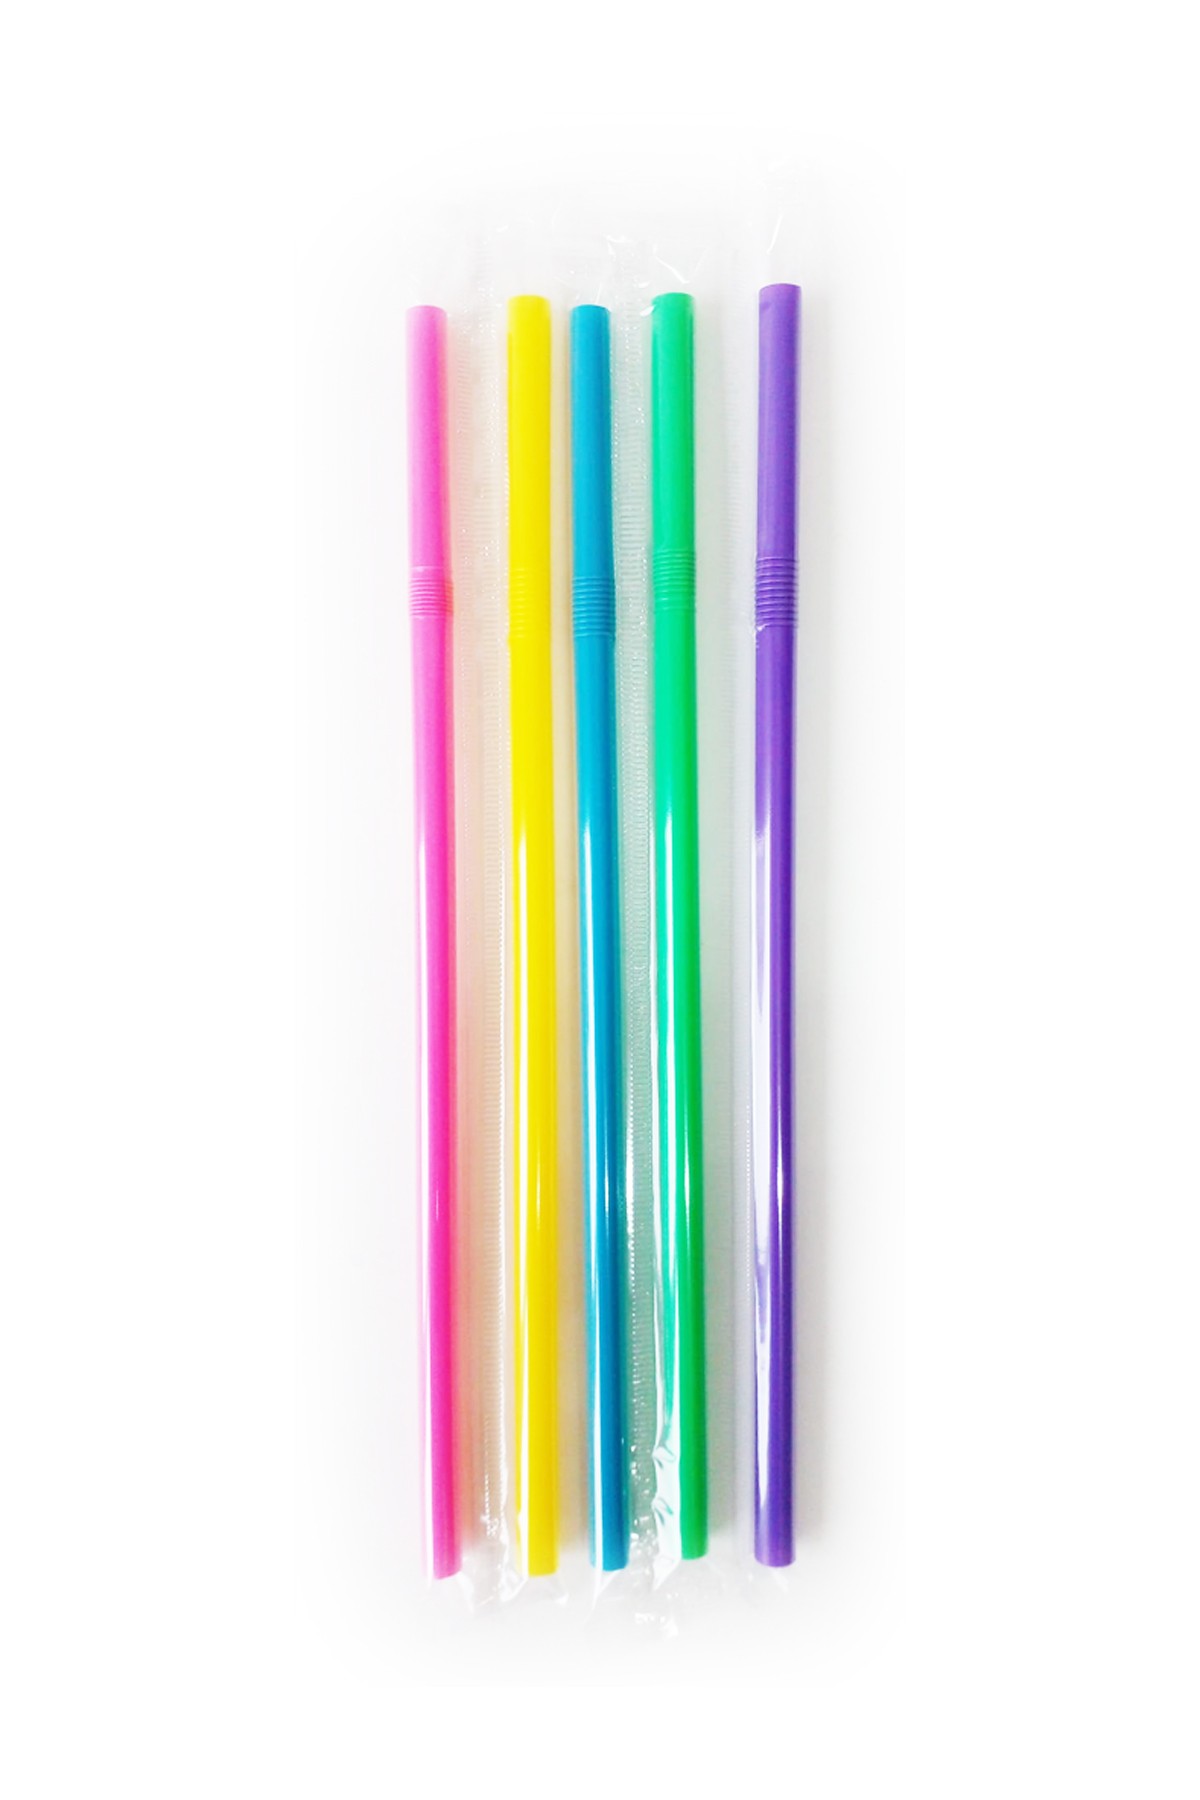 Jelatinli Frozen Körüklü Kalın pipet - 250 Adet Karışık Renkli